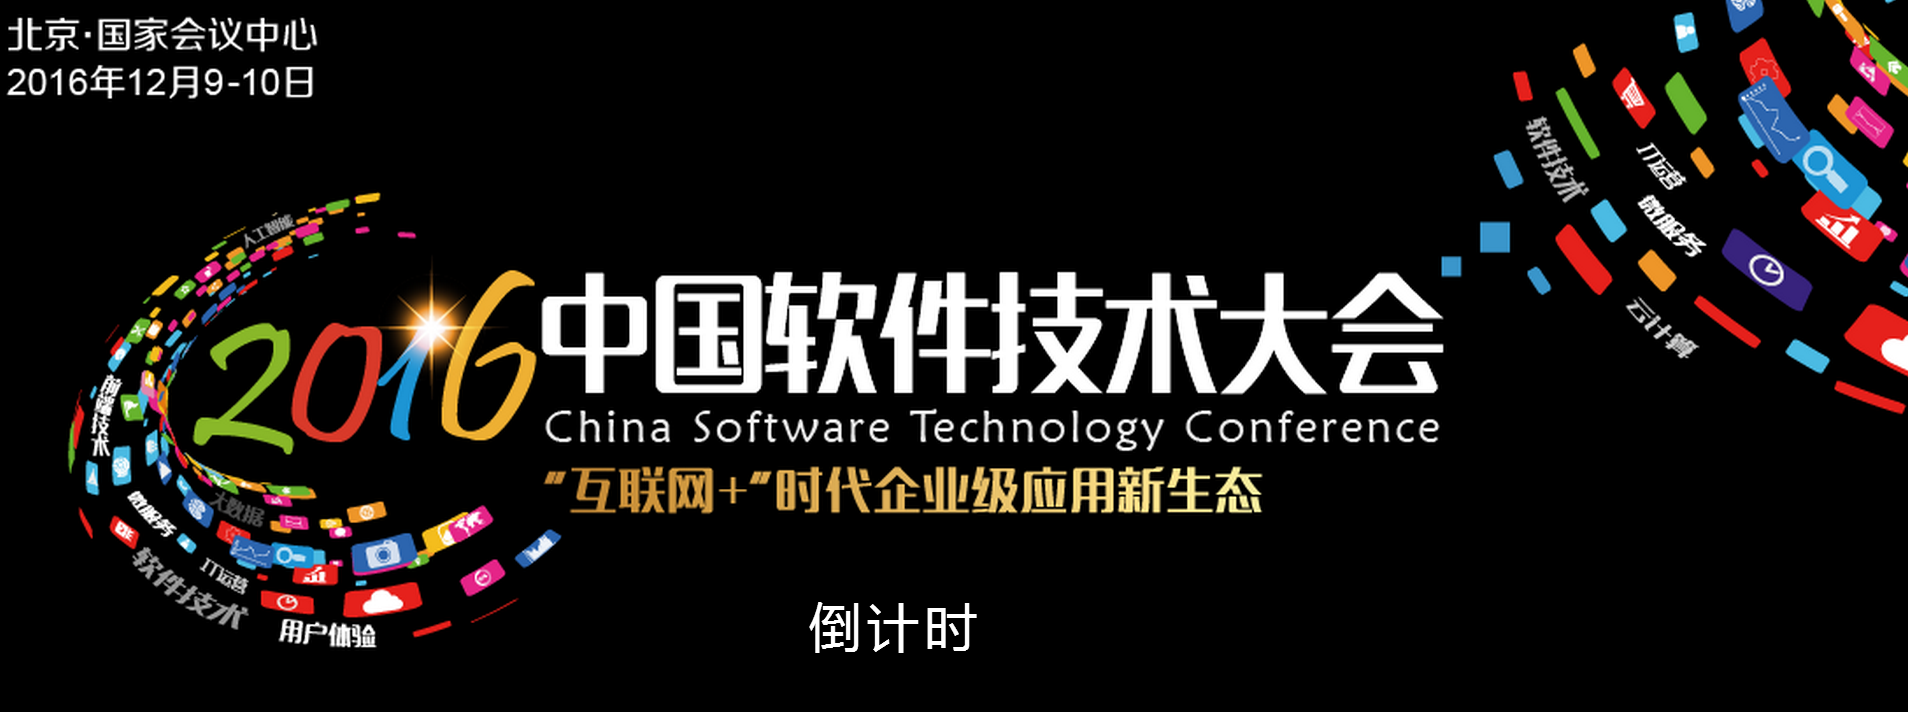 互联网+时代企业级应用新生态—2016年中国软件技术大会